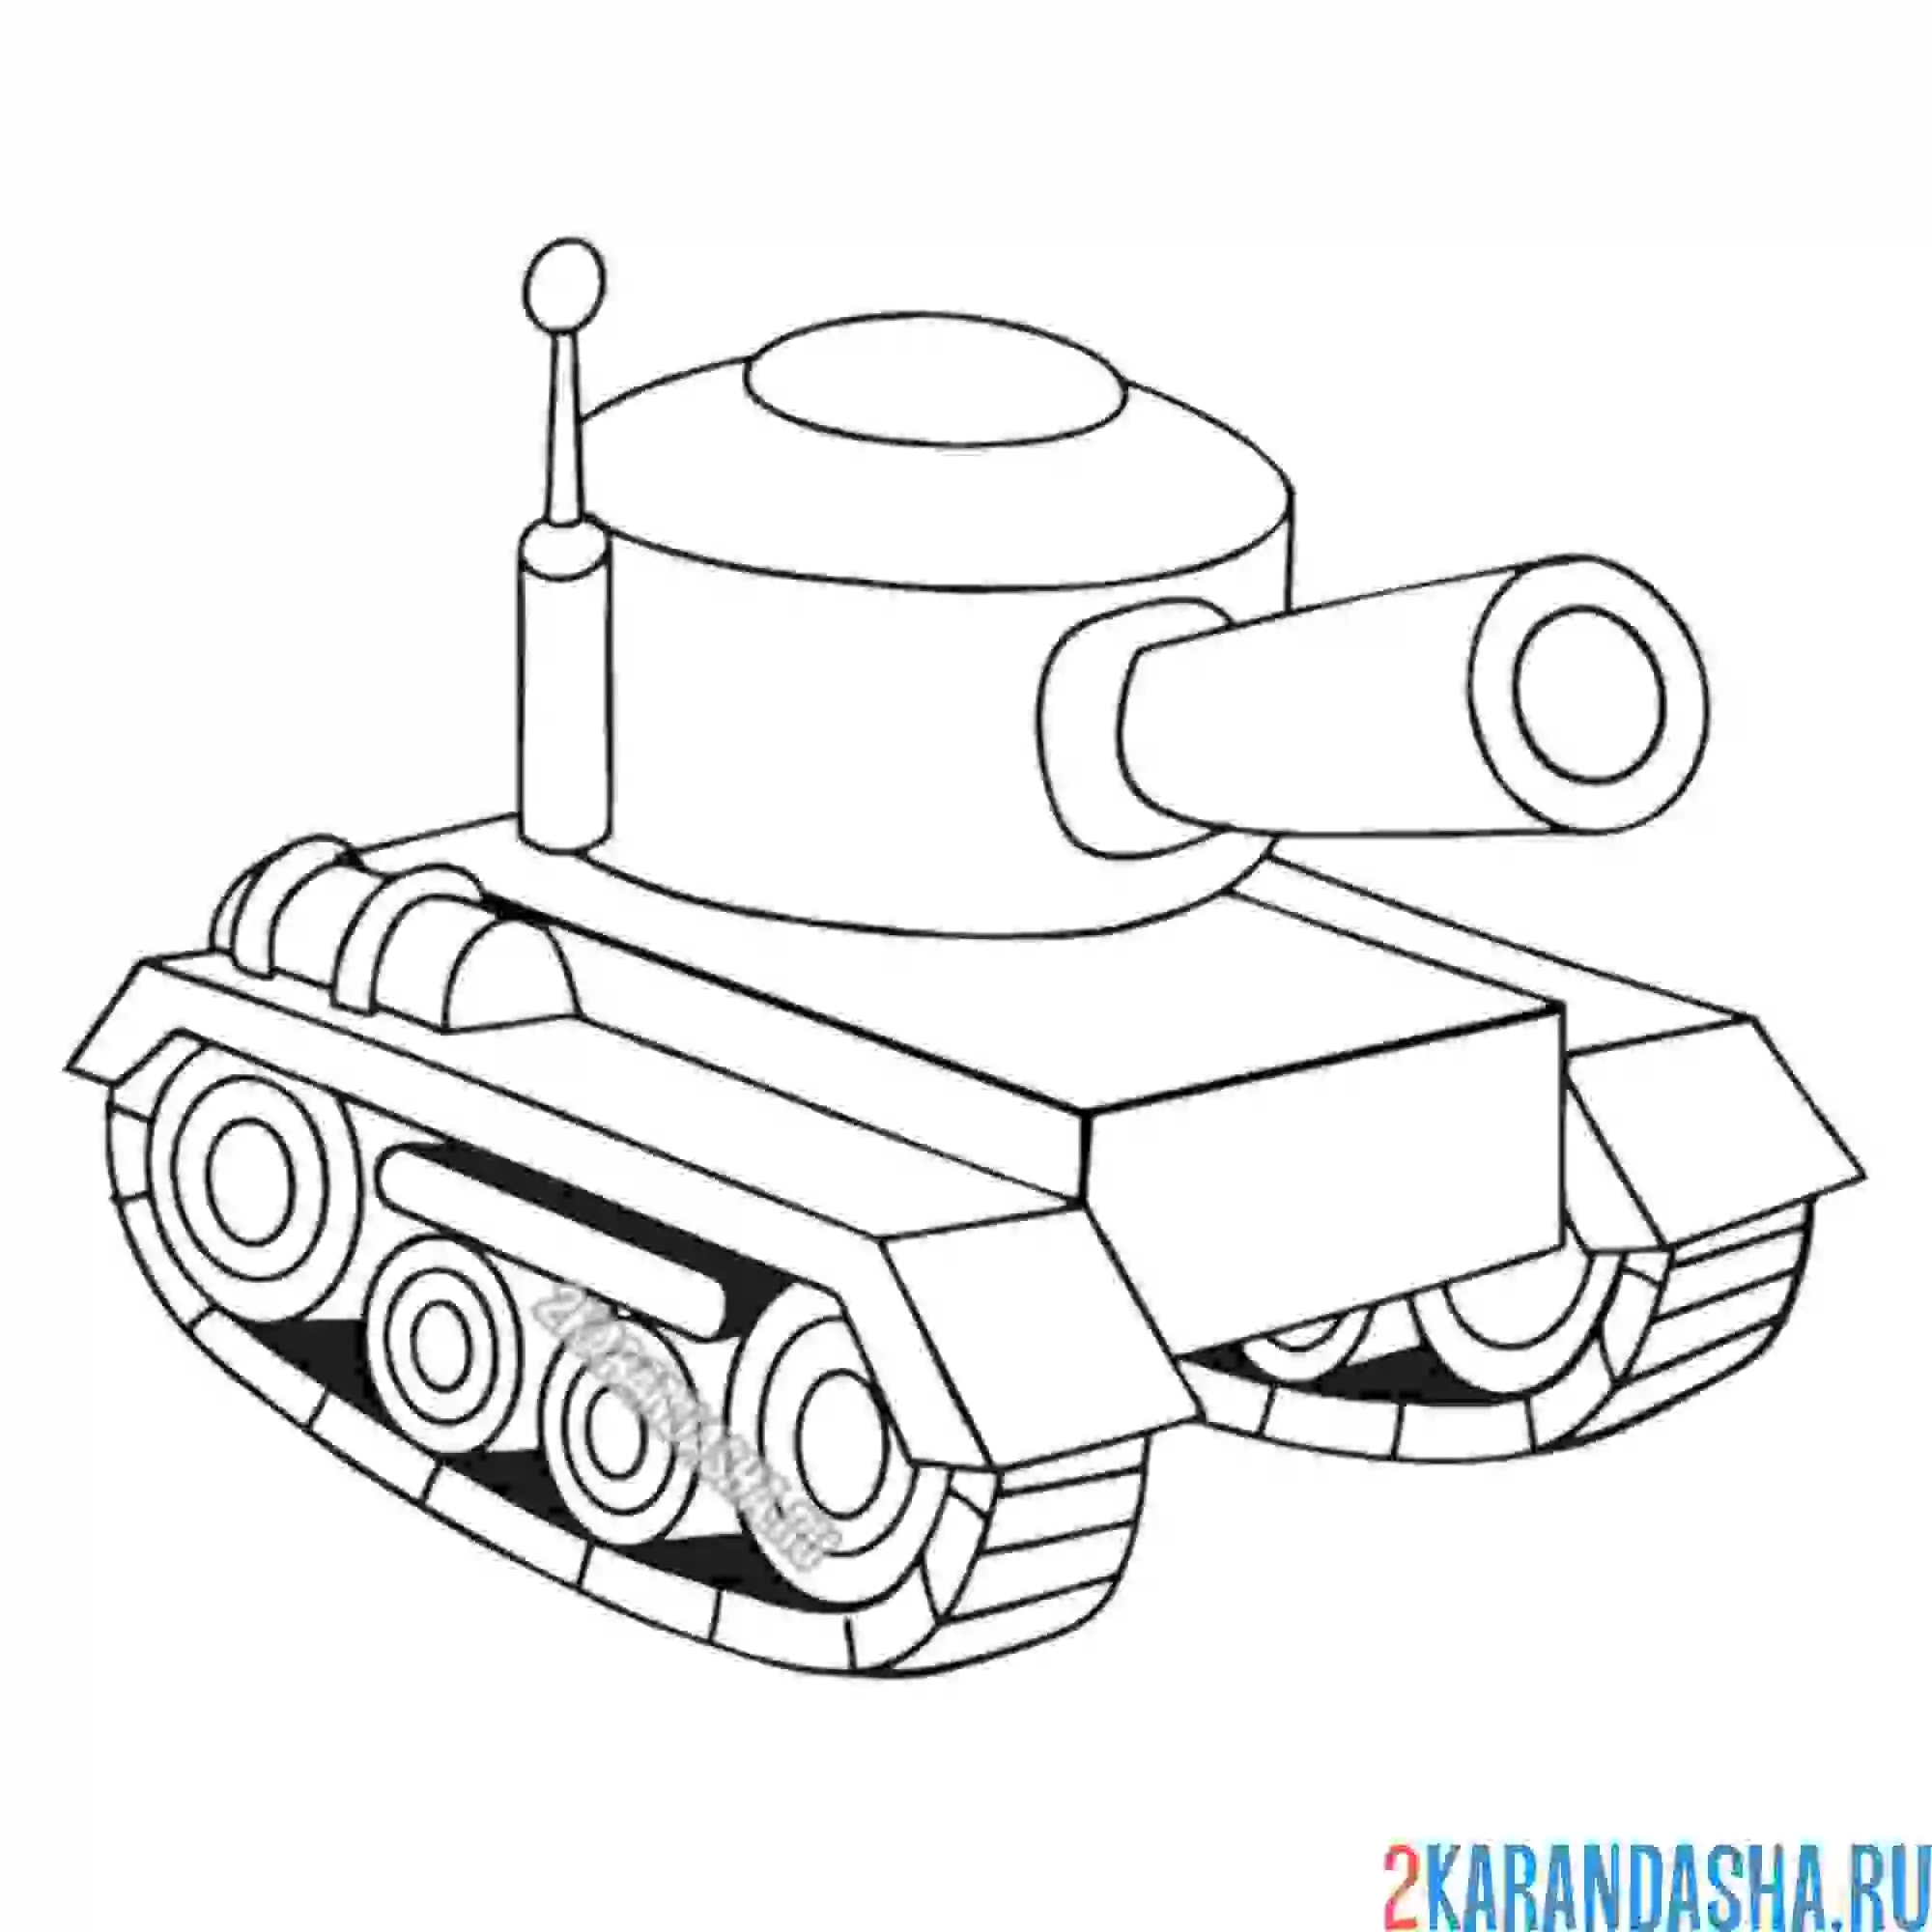 Раскраска игрушечная моделька танка